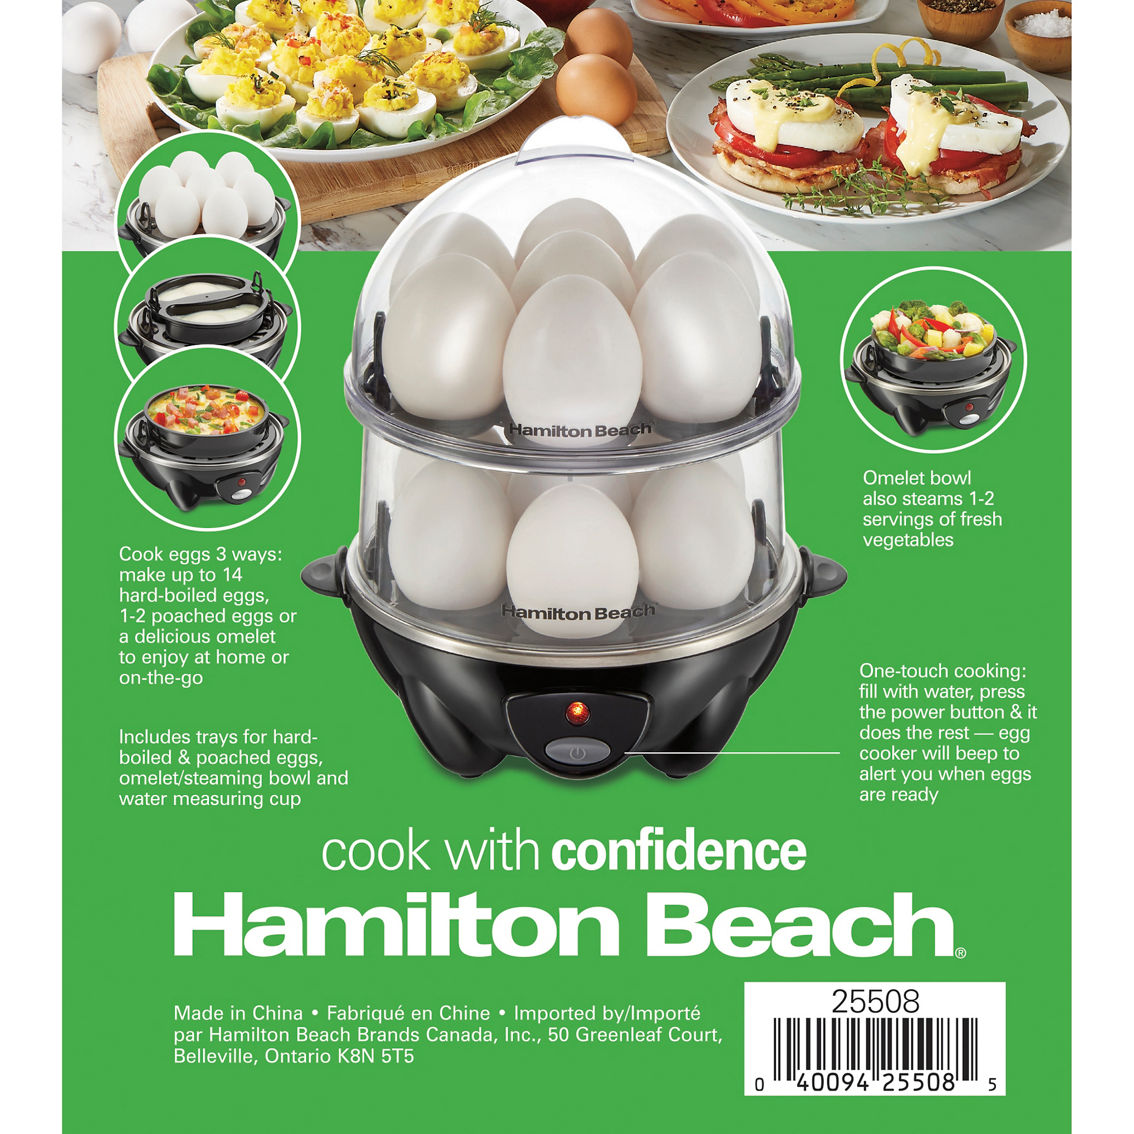 Hamilton Beach 3-in-1 Egg Cooker